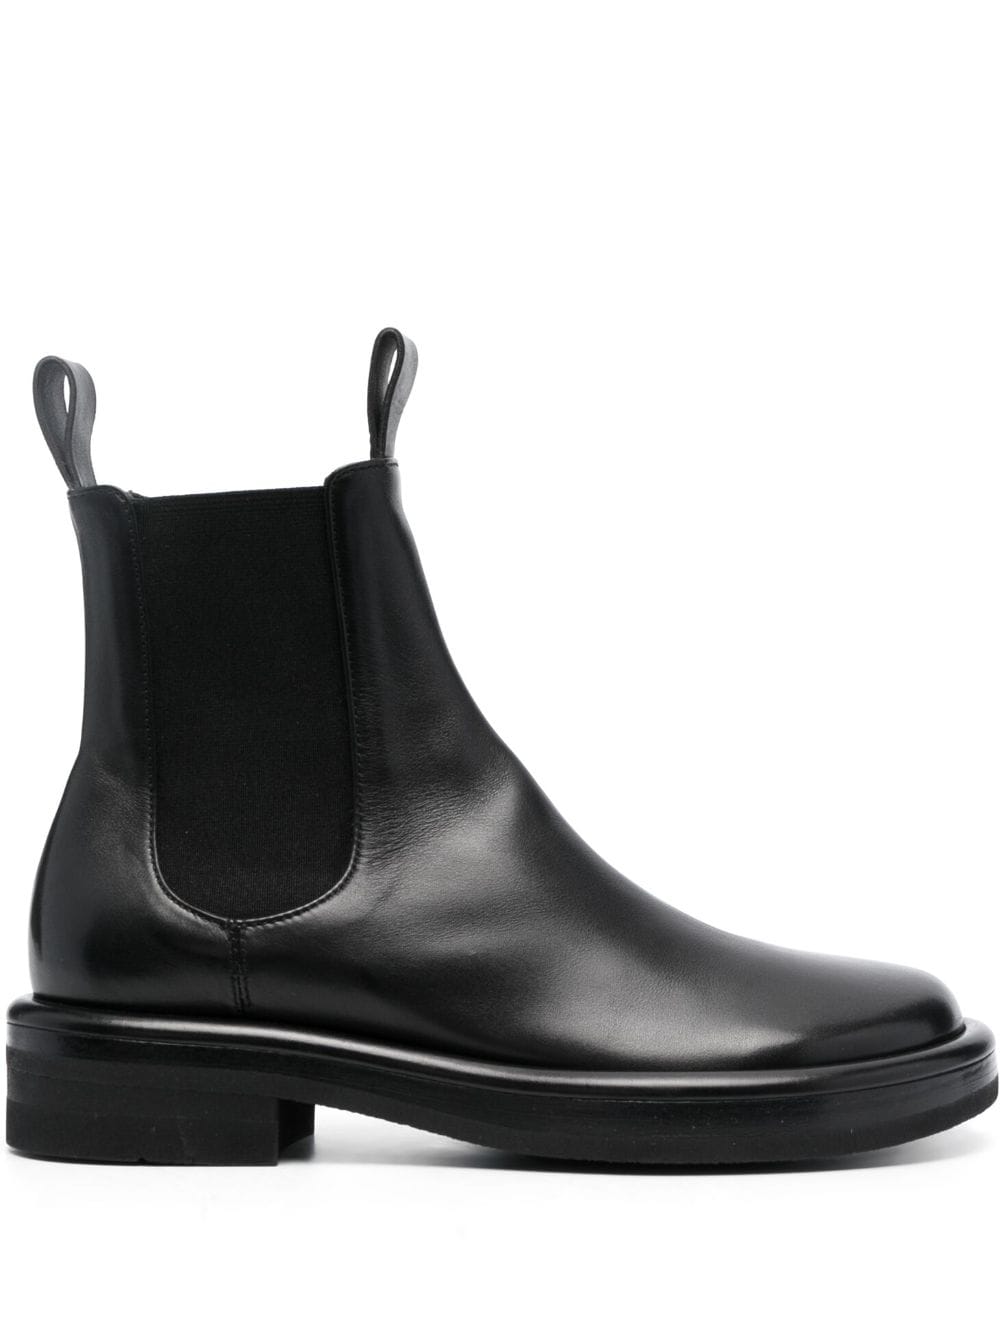 Officine Creative Era 001 leather ankle boots - Black von Officine Creative